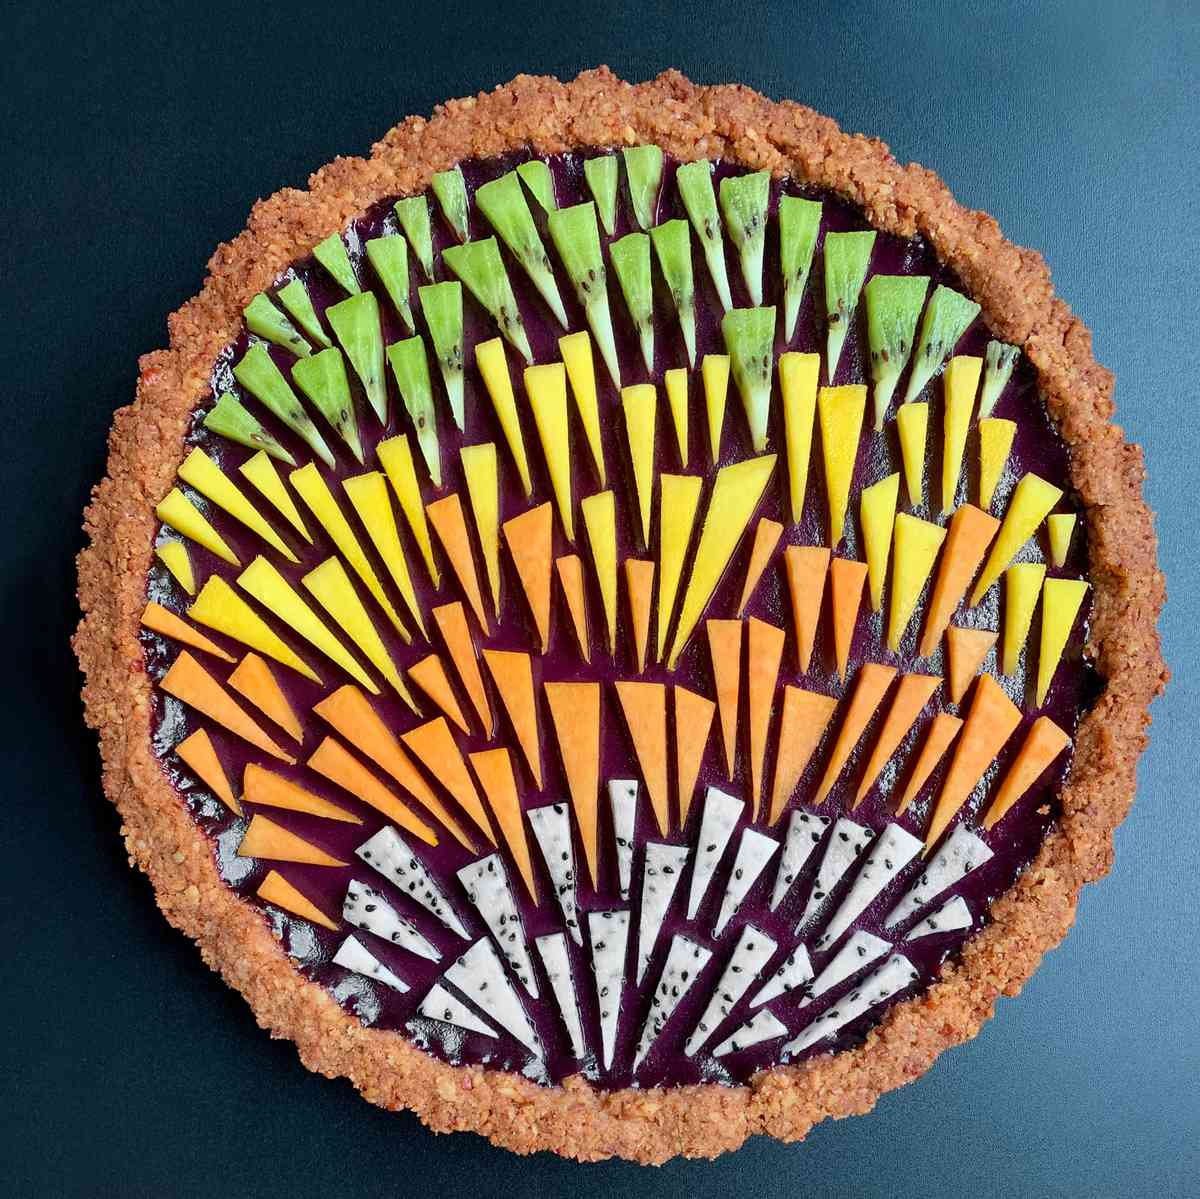 a geometrically stylized pie